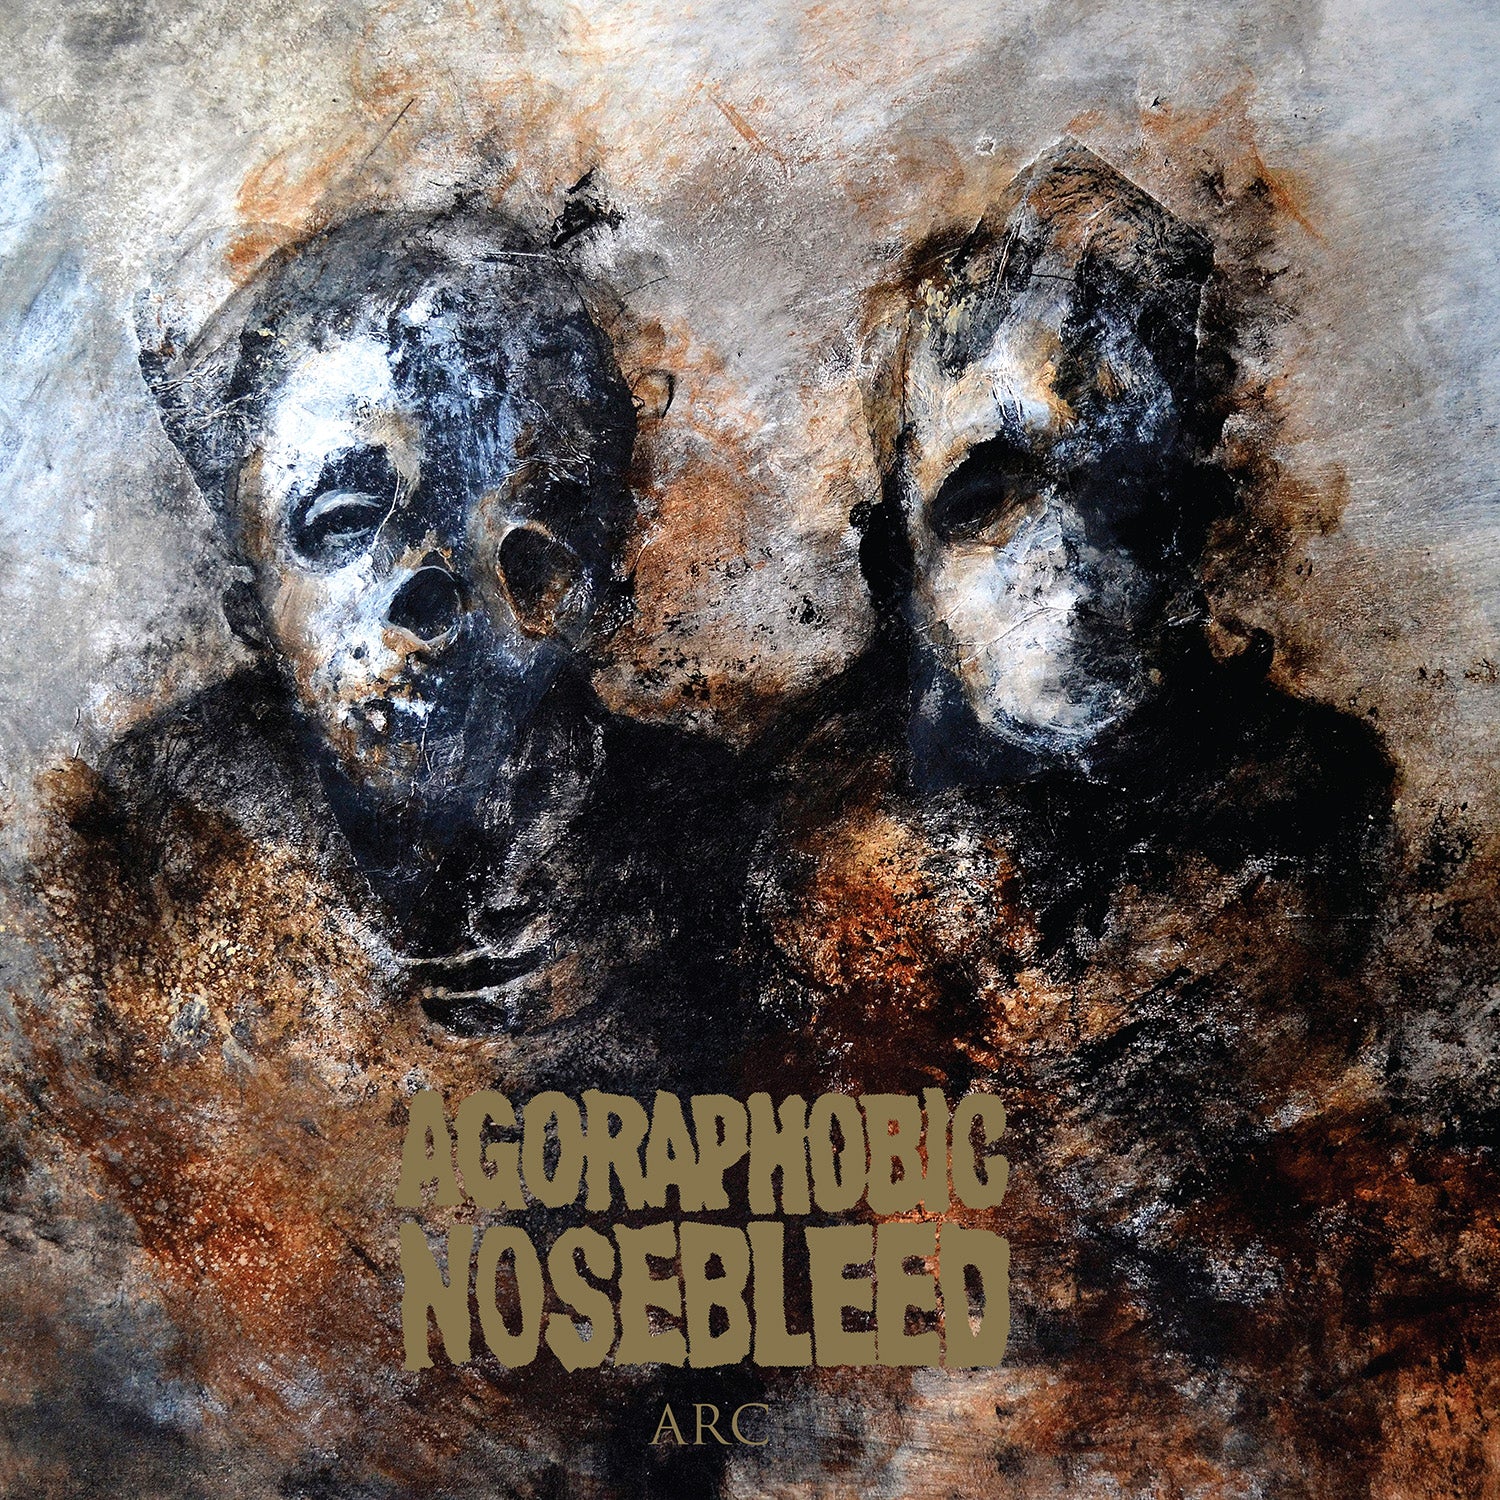 Agoraphobic Nosebleed "Arc" CD